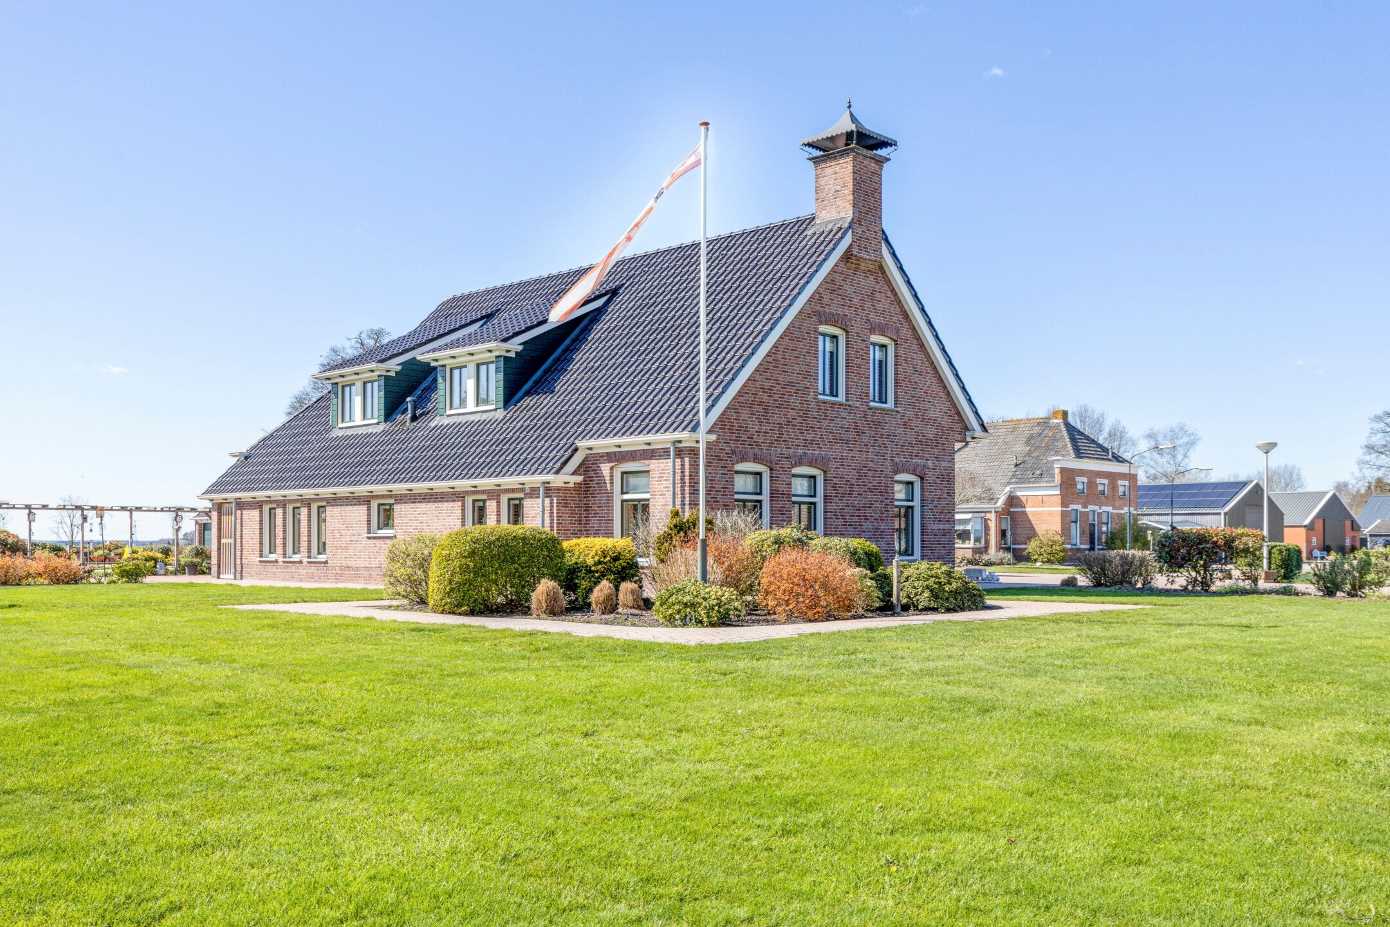 Te koop in Drenthe: prachtige en royale boeren villa met zeer grote tuin